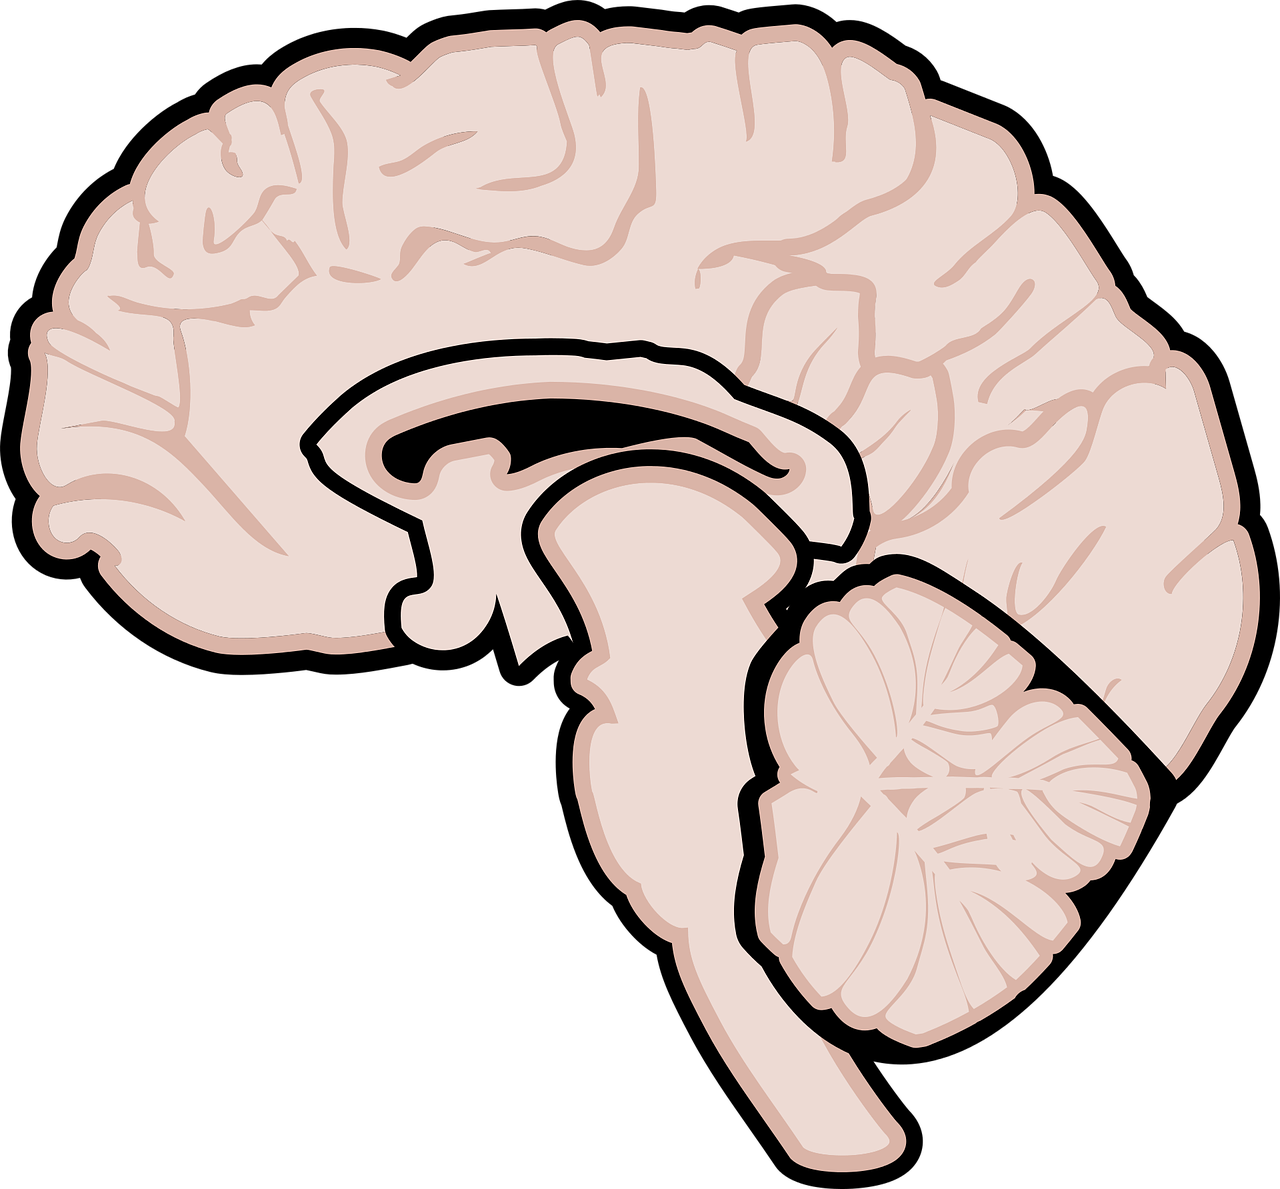 graphic, human brain, brain